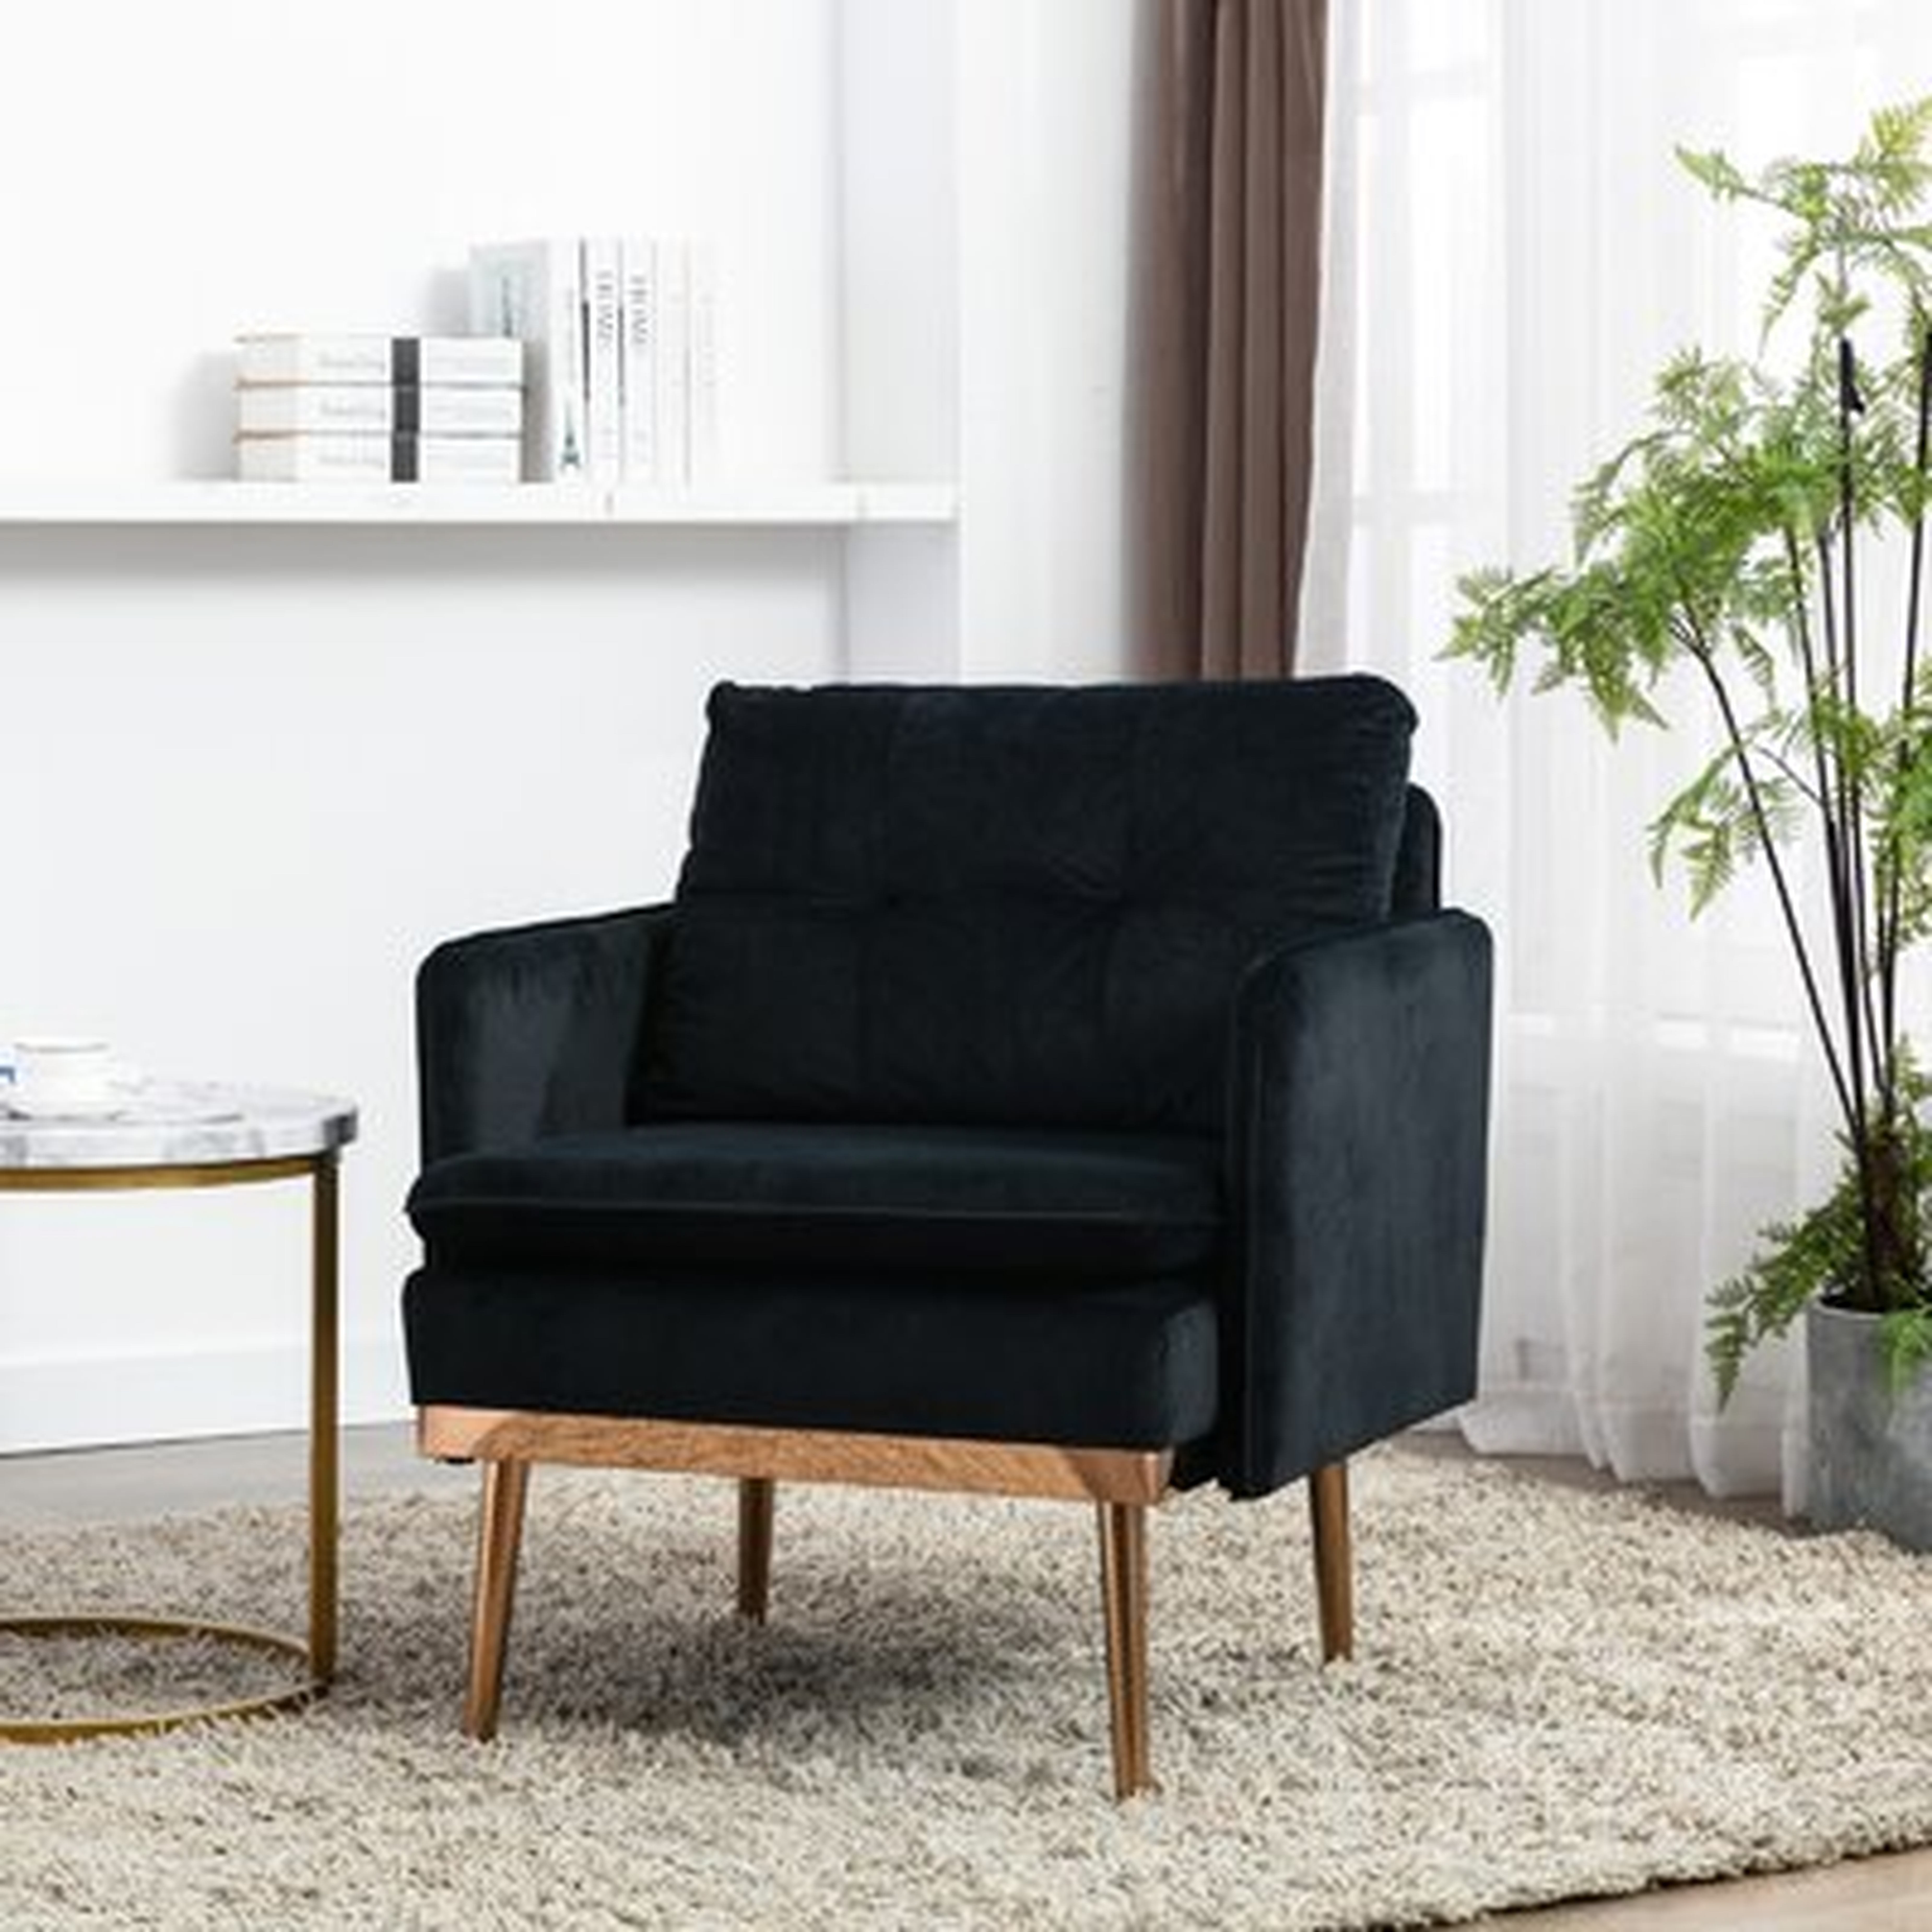 Chaise  Lounge Chair /Accent Chair,Black - Wayfair